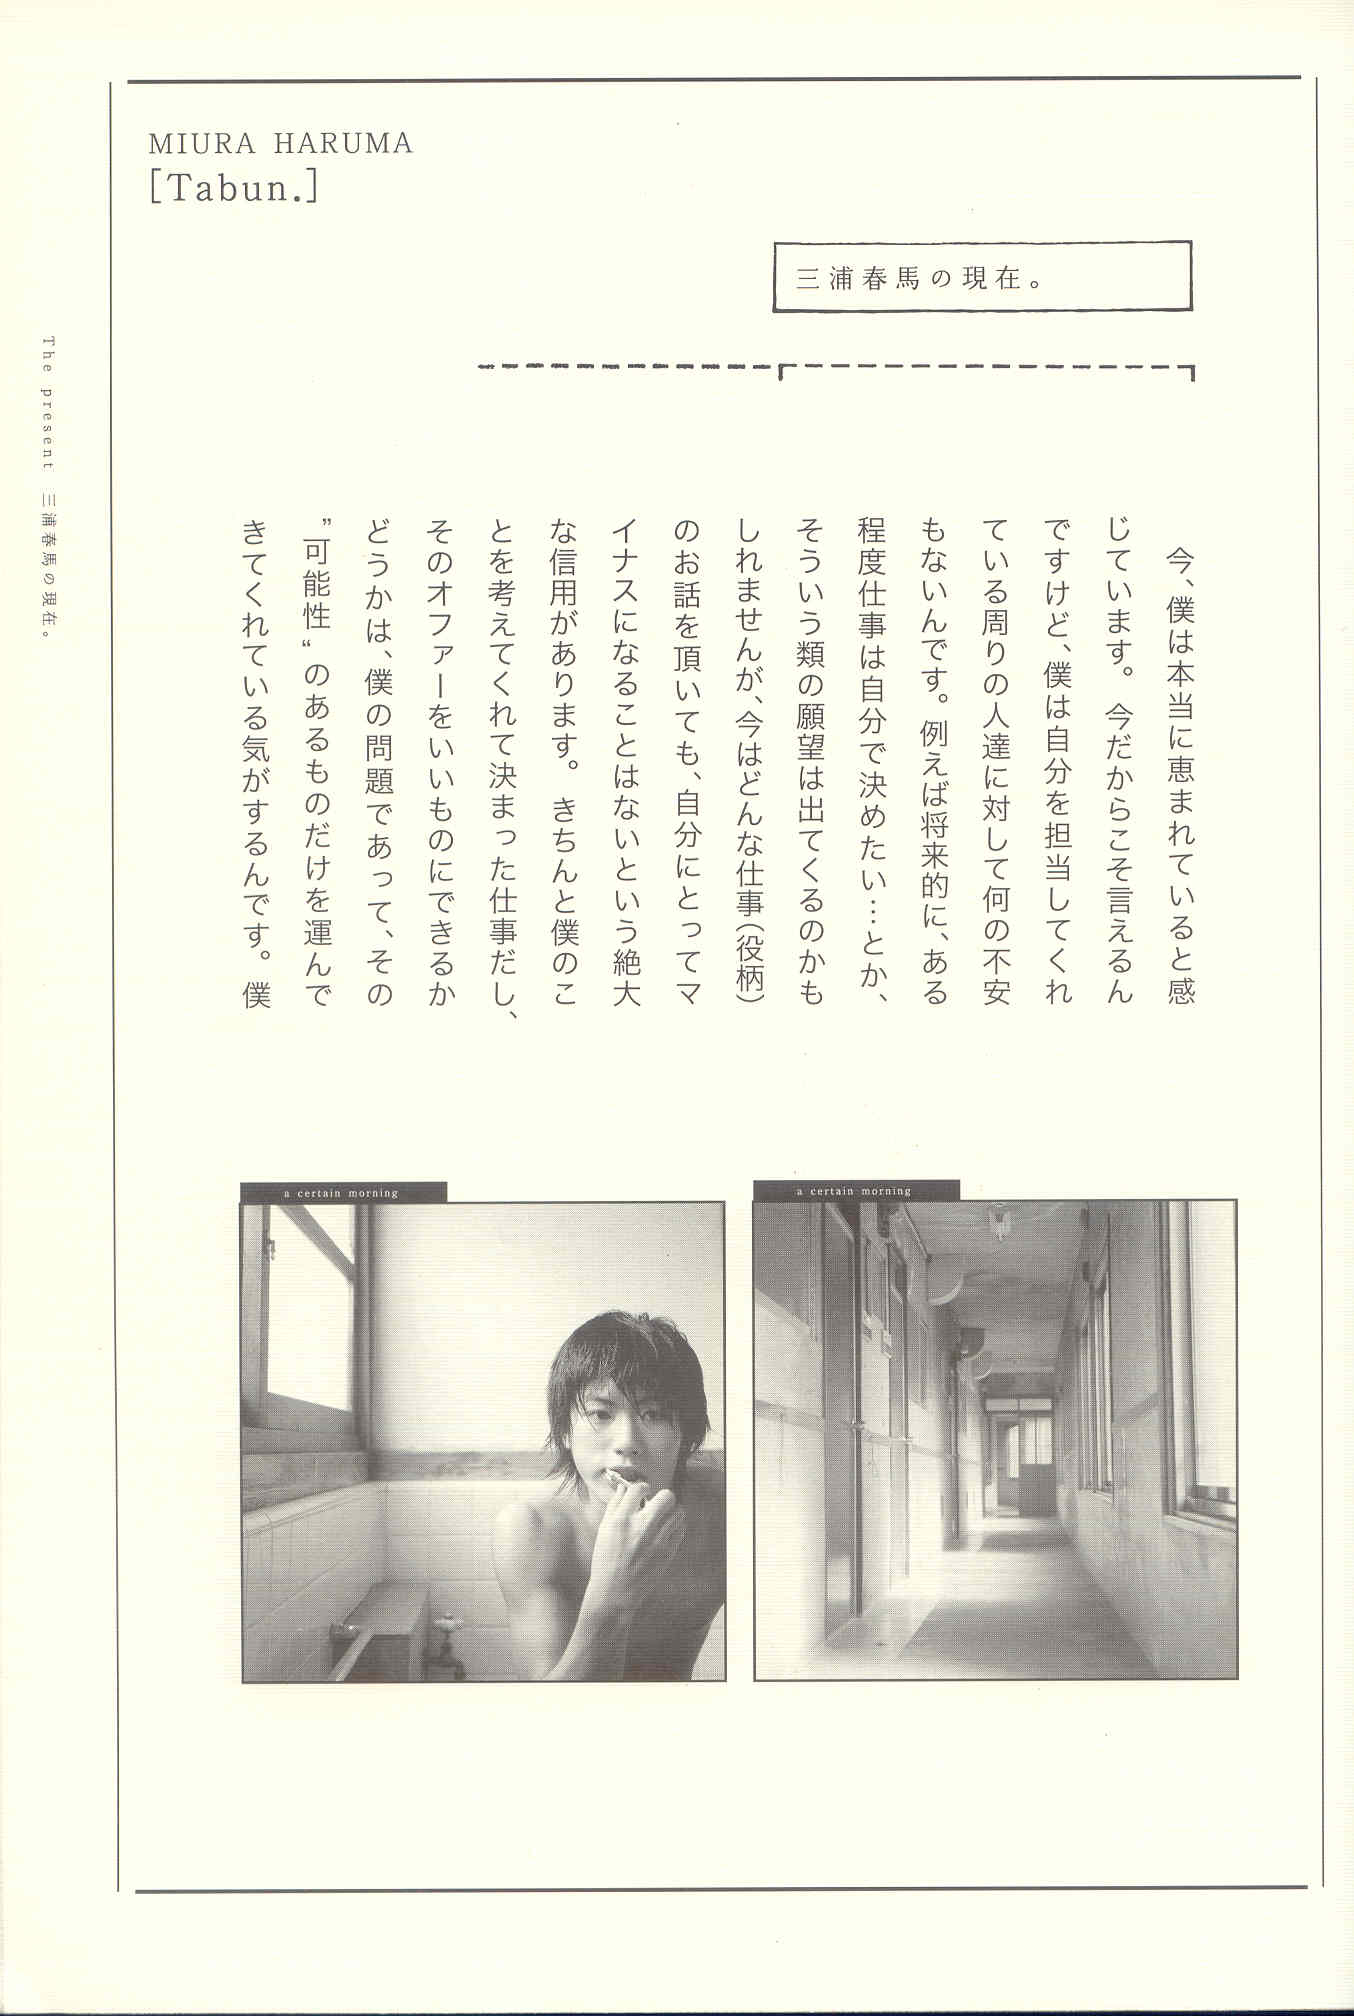 miura, haruma, photobook, tabun, Japan, Stars, Miyura, фото